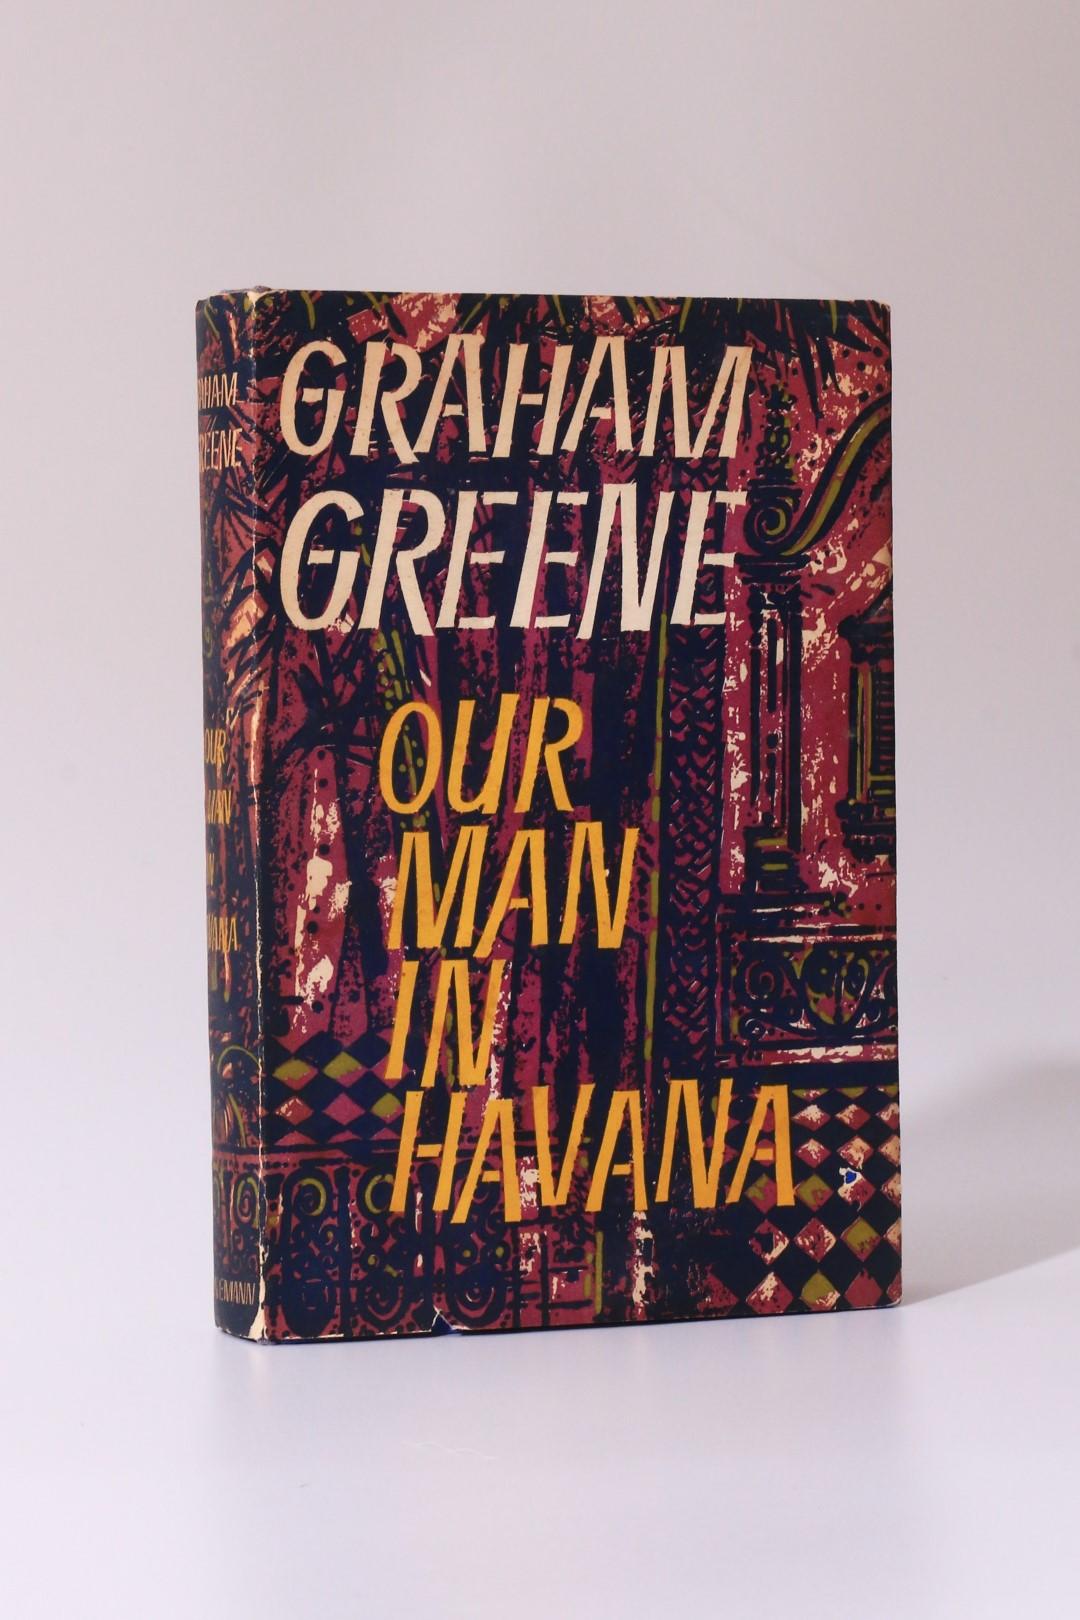 Graham Greene - Our Man in Havana - Heinemann, 1958, First Edition.